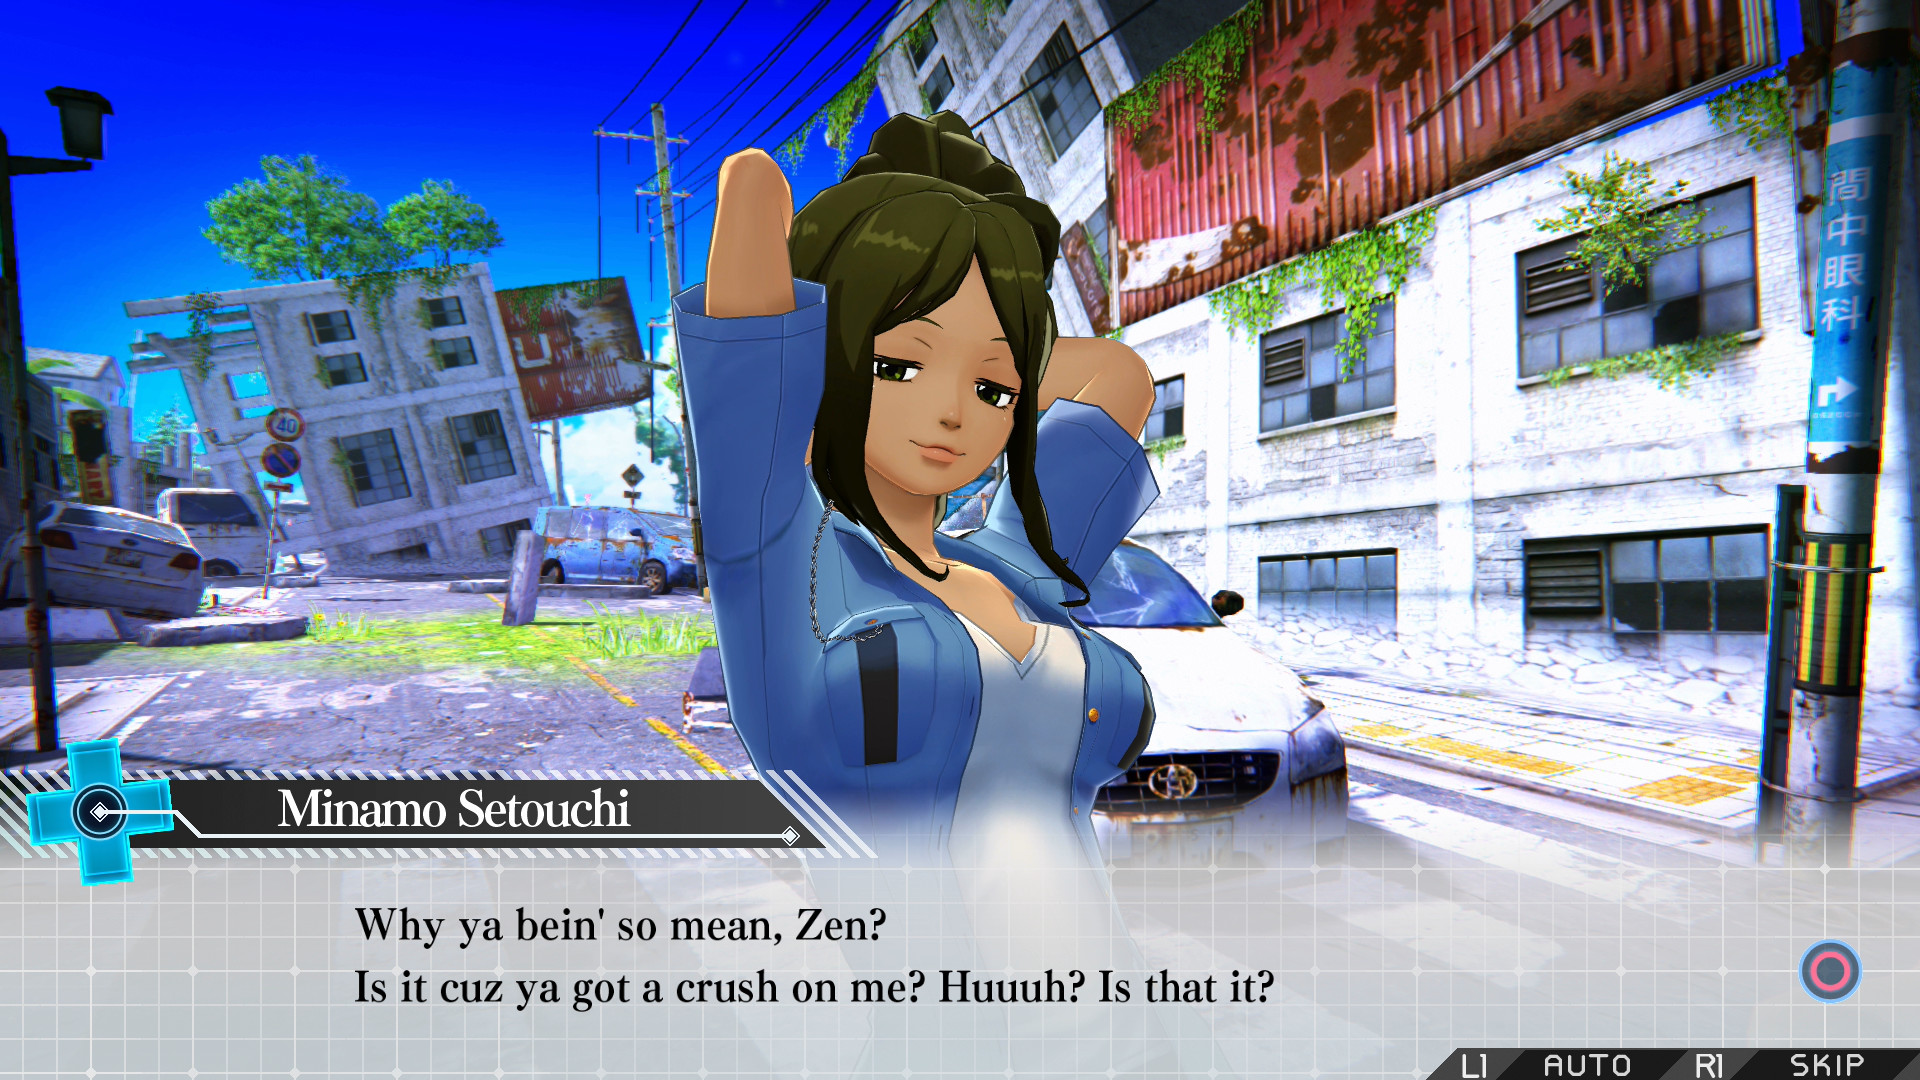 Zanki Zero: Last Beginning screenshot